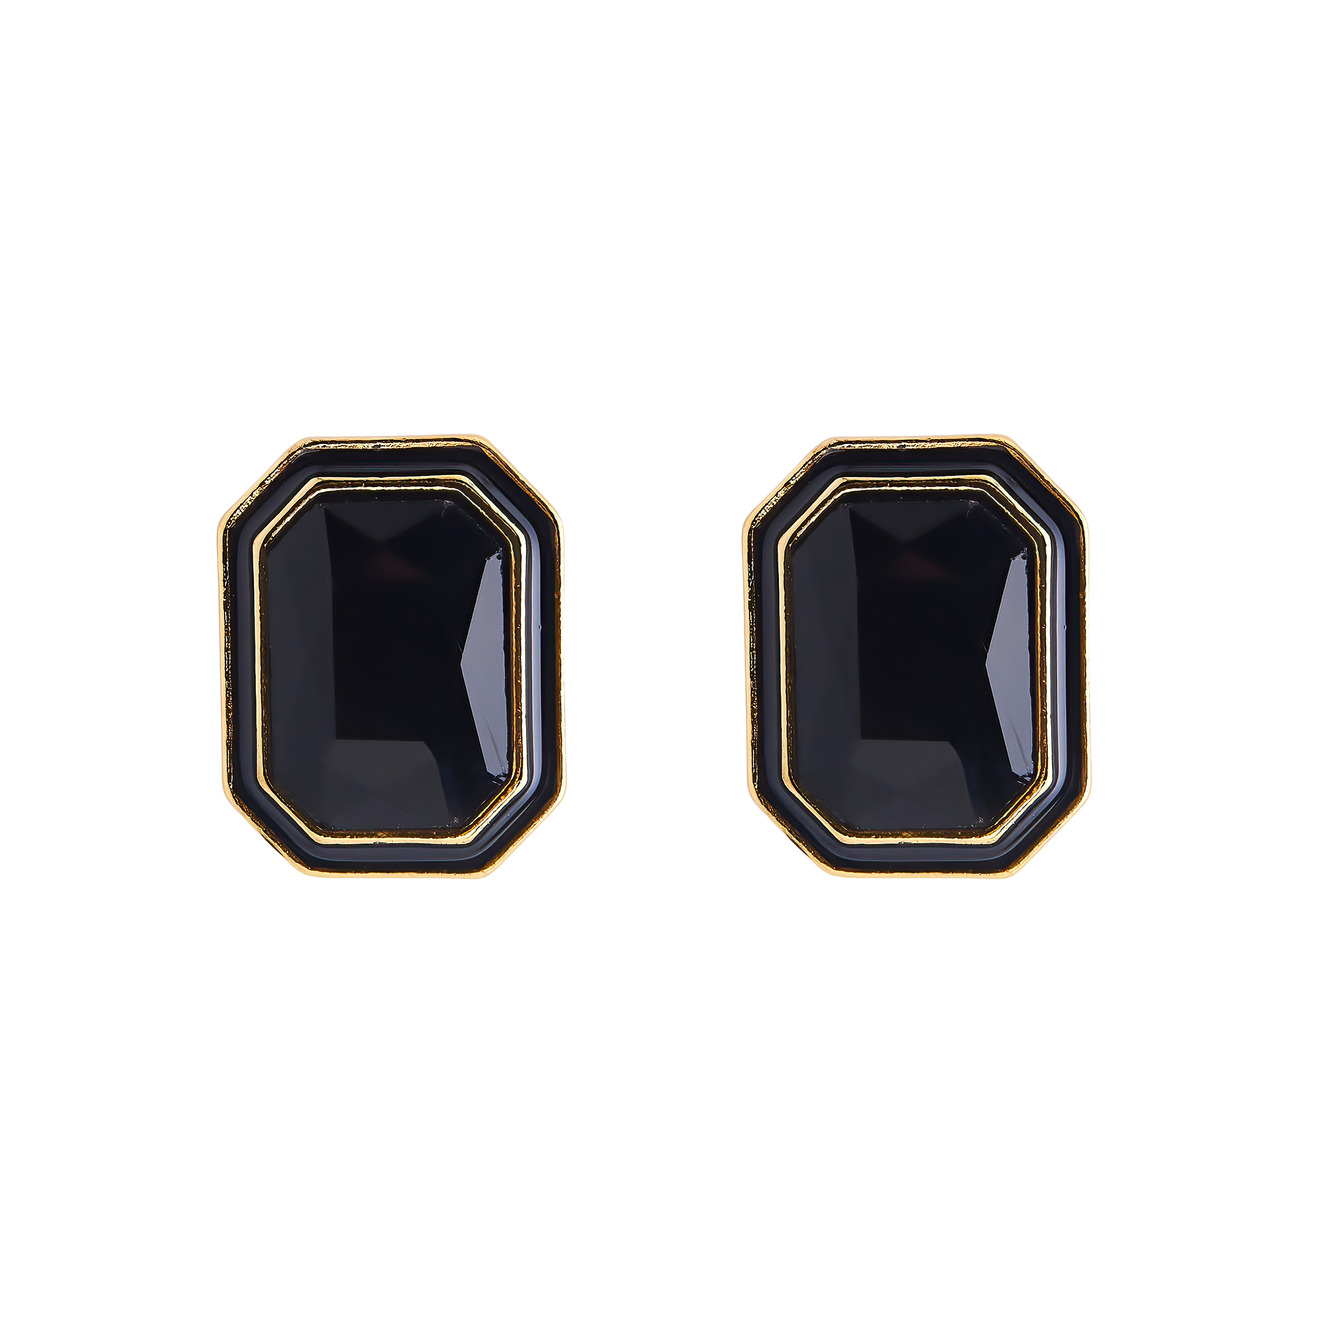 Herald Percy Крупные золотистые серьги с черными кристаллами и черной эмалью herald percy колье с большими черными кристаллами и подвеской крестом